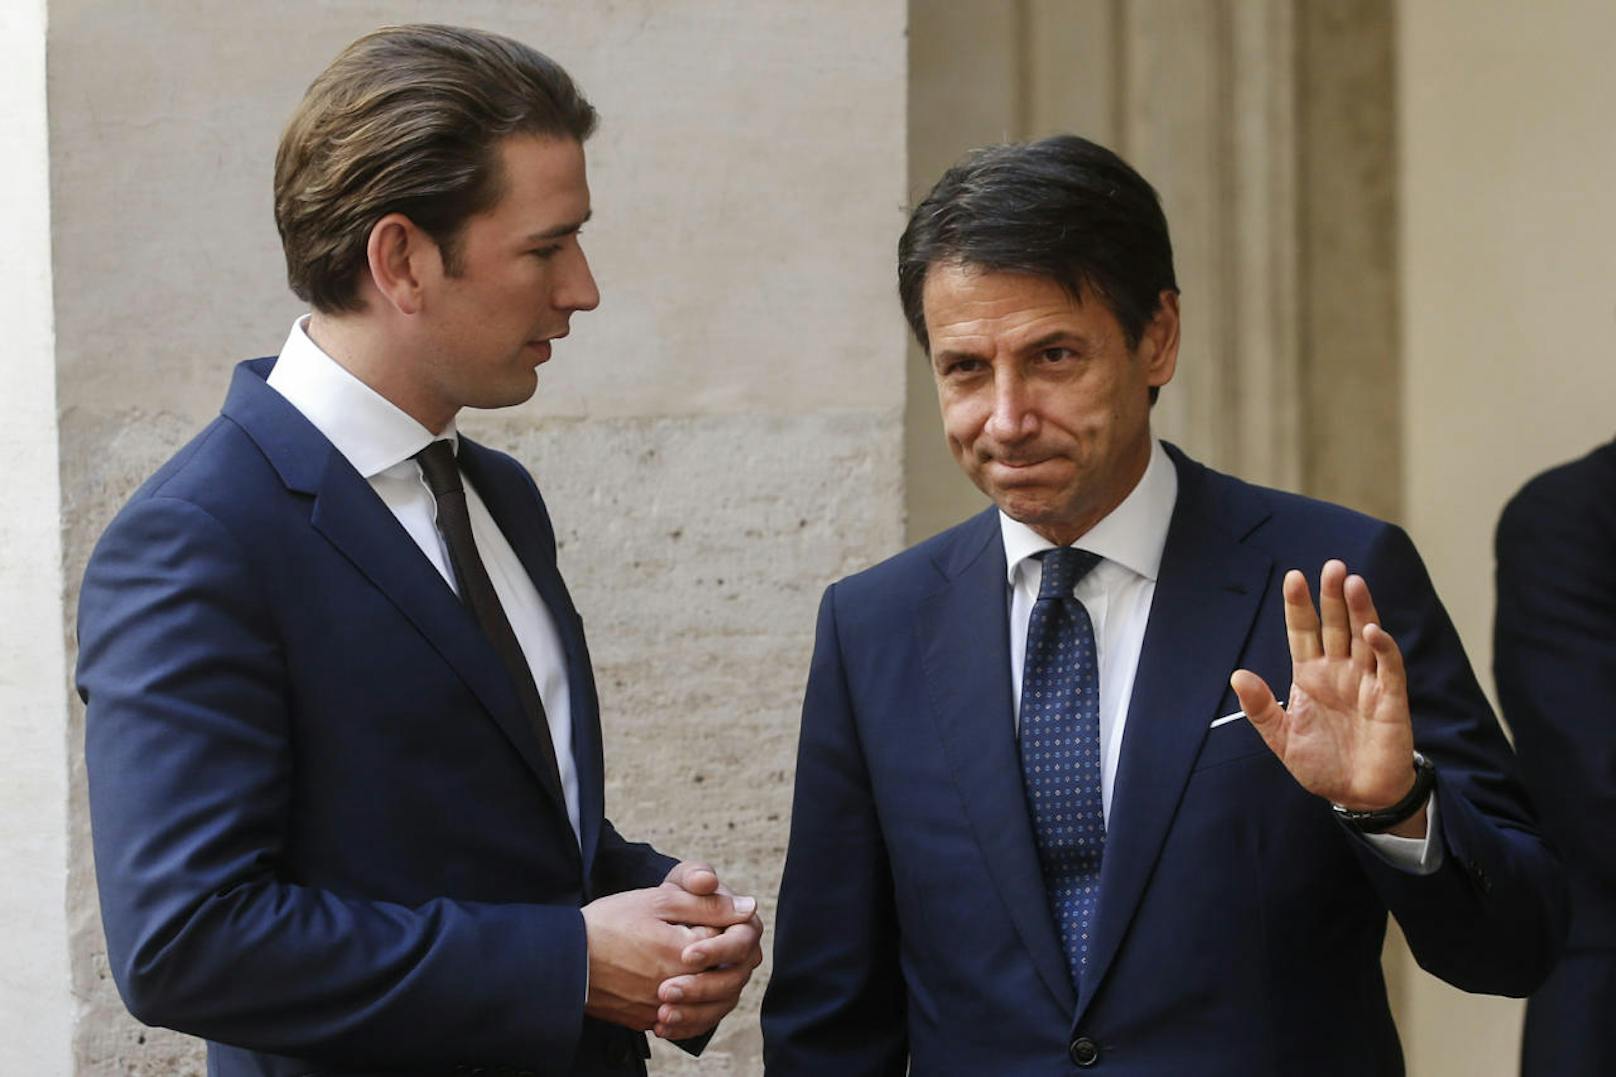 Bundeskanzler Sebastian Kurz (l.) zu Besuch bei Italien Ministerpräsident Giuseppe Conte